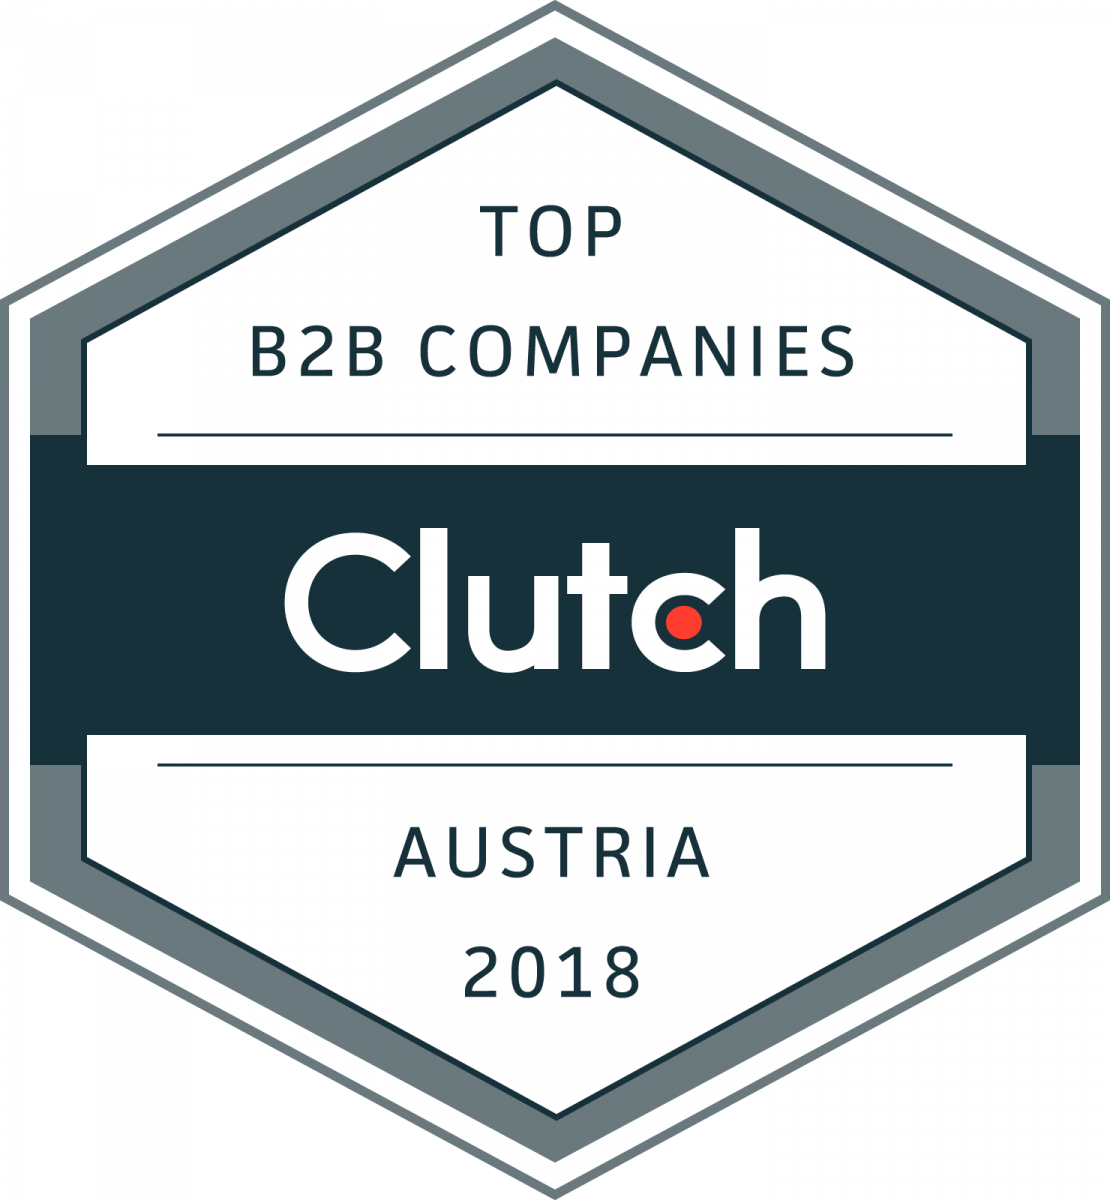 top B2B companies in Austria in 2018